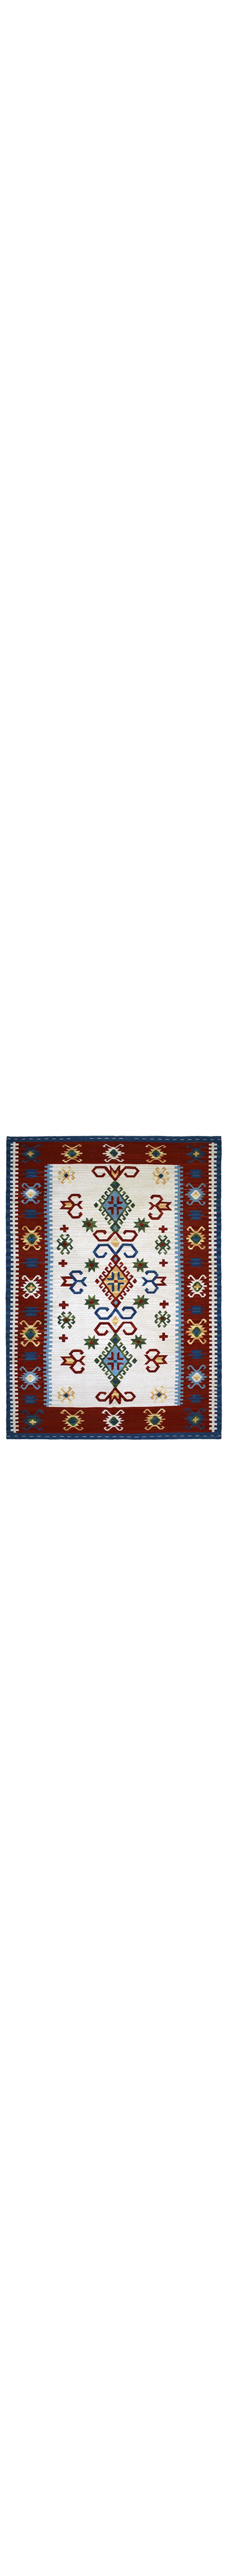 tappeto kilim rosso e bianco con rombi e decorazioni geometriche